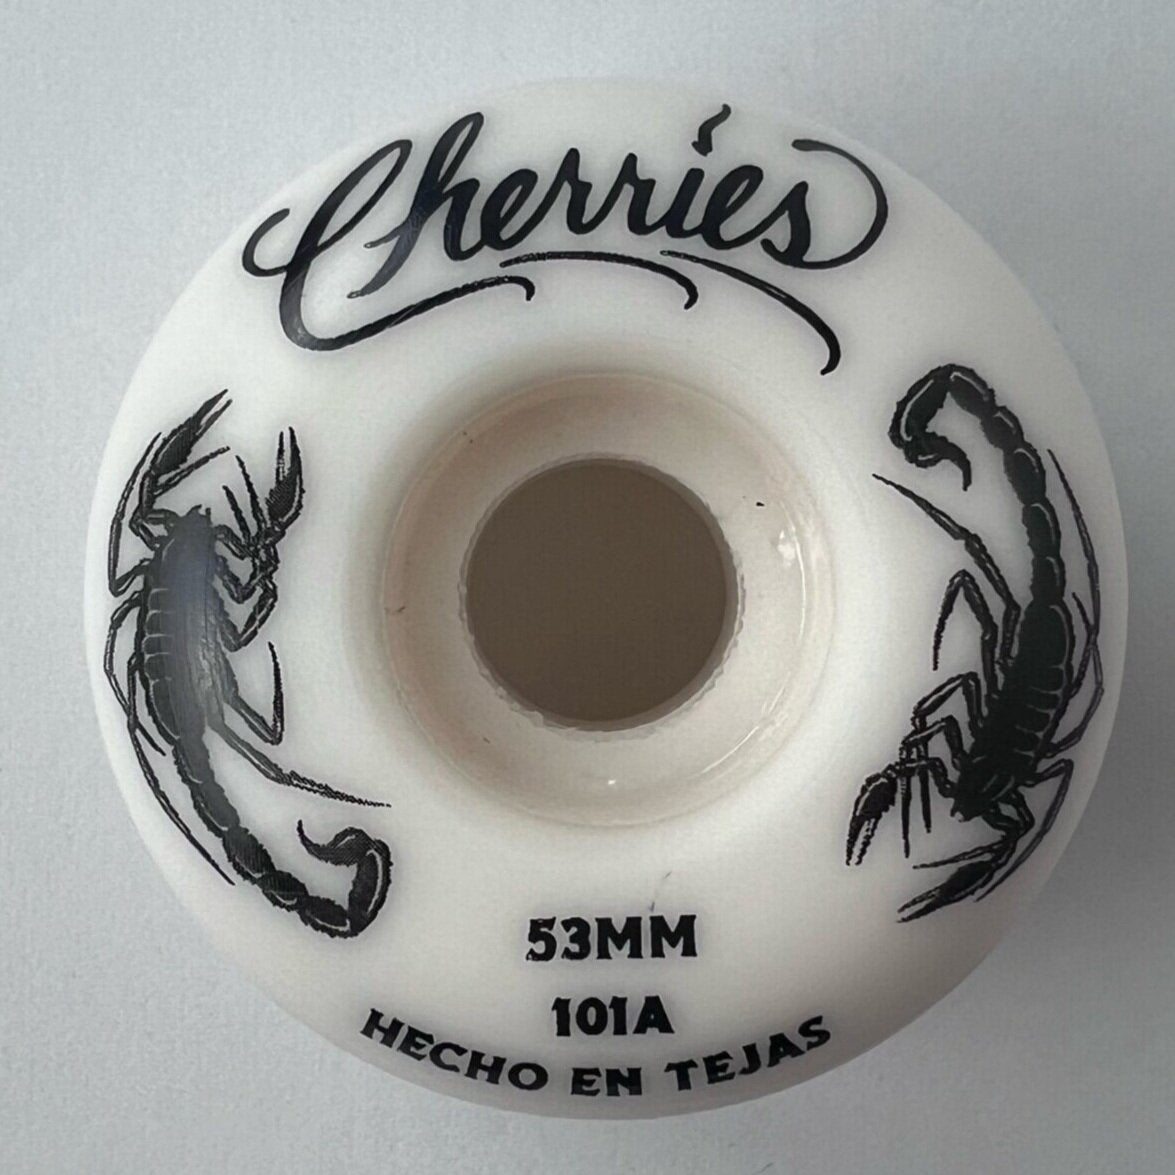 Cherries 53mm 101a Scorpion Wheels - Skateboard - Wheels